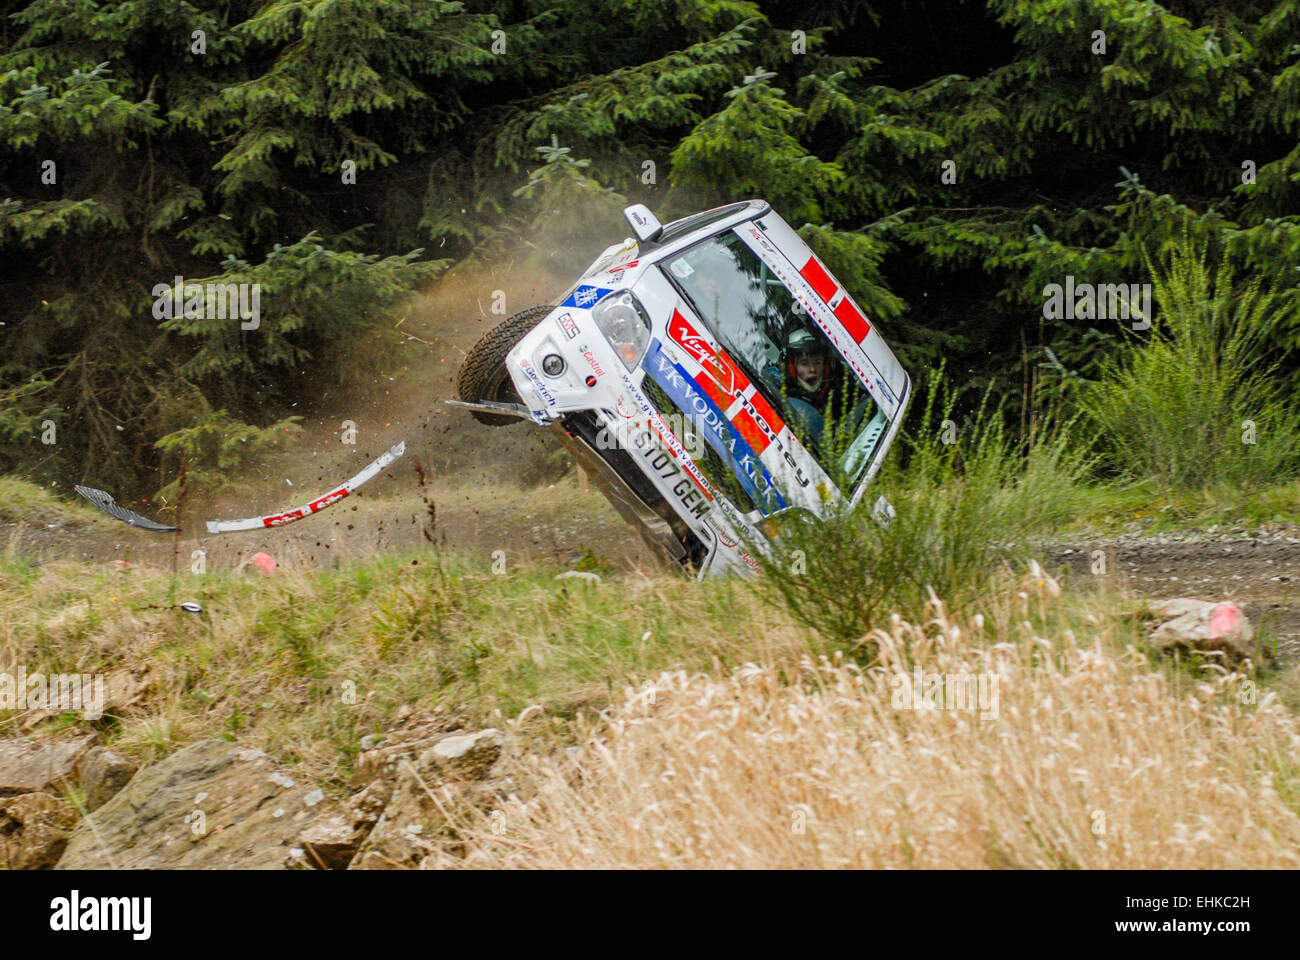 Elfyn Evans rollt seinen Ford Fiesta 2007 Pirelli internationale Rallye, das sind die einzigen Fotos des Vorfalls. Stockfoto